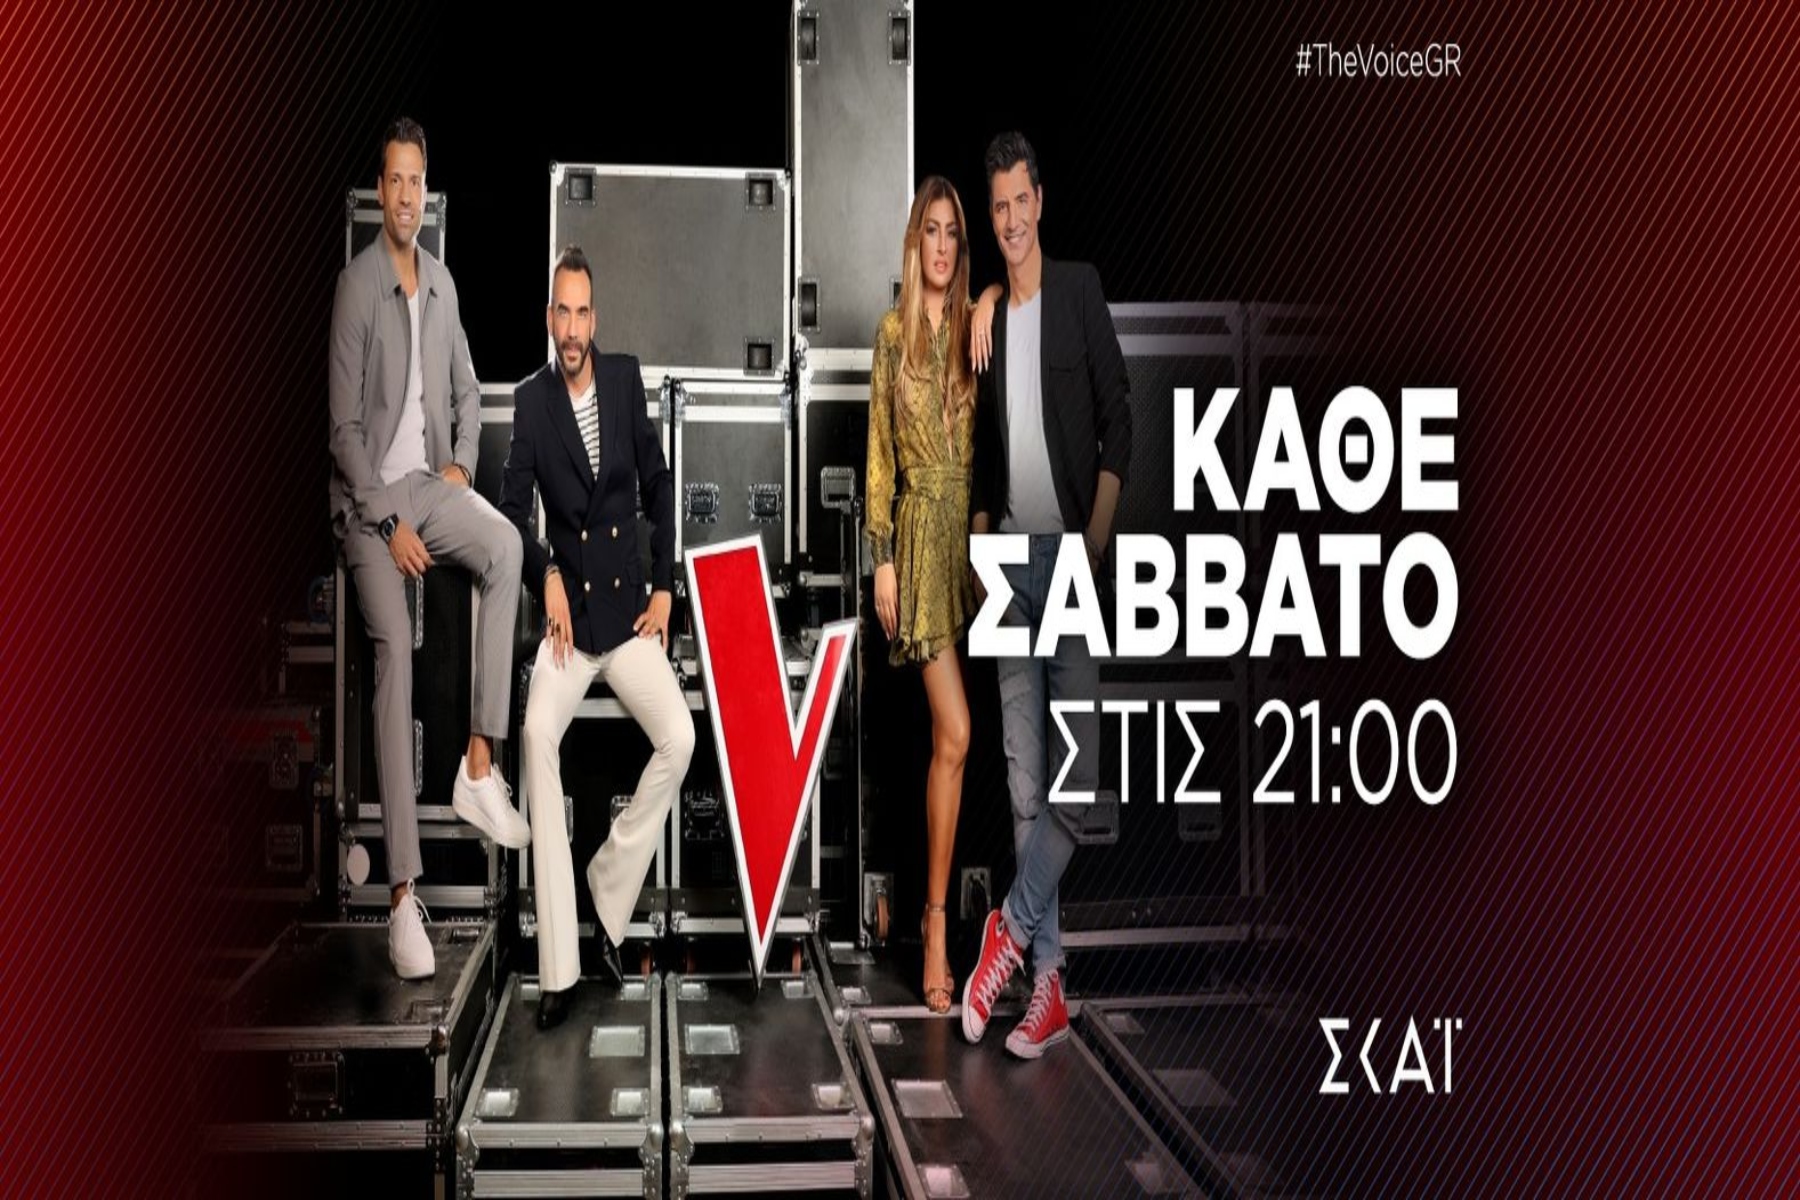 The Voice of Greece 07/01: Επιστρέφει απόψε στις 21.00 με τη φάση των Knockouts! [trailer]